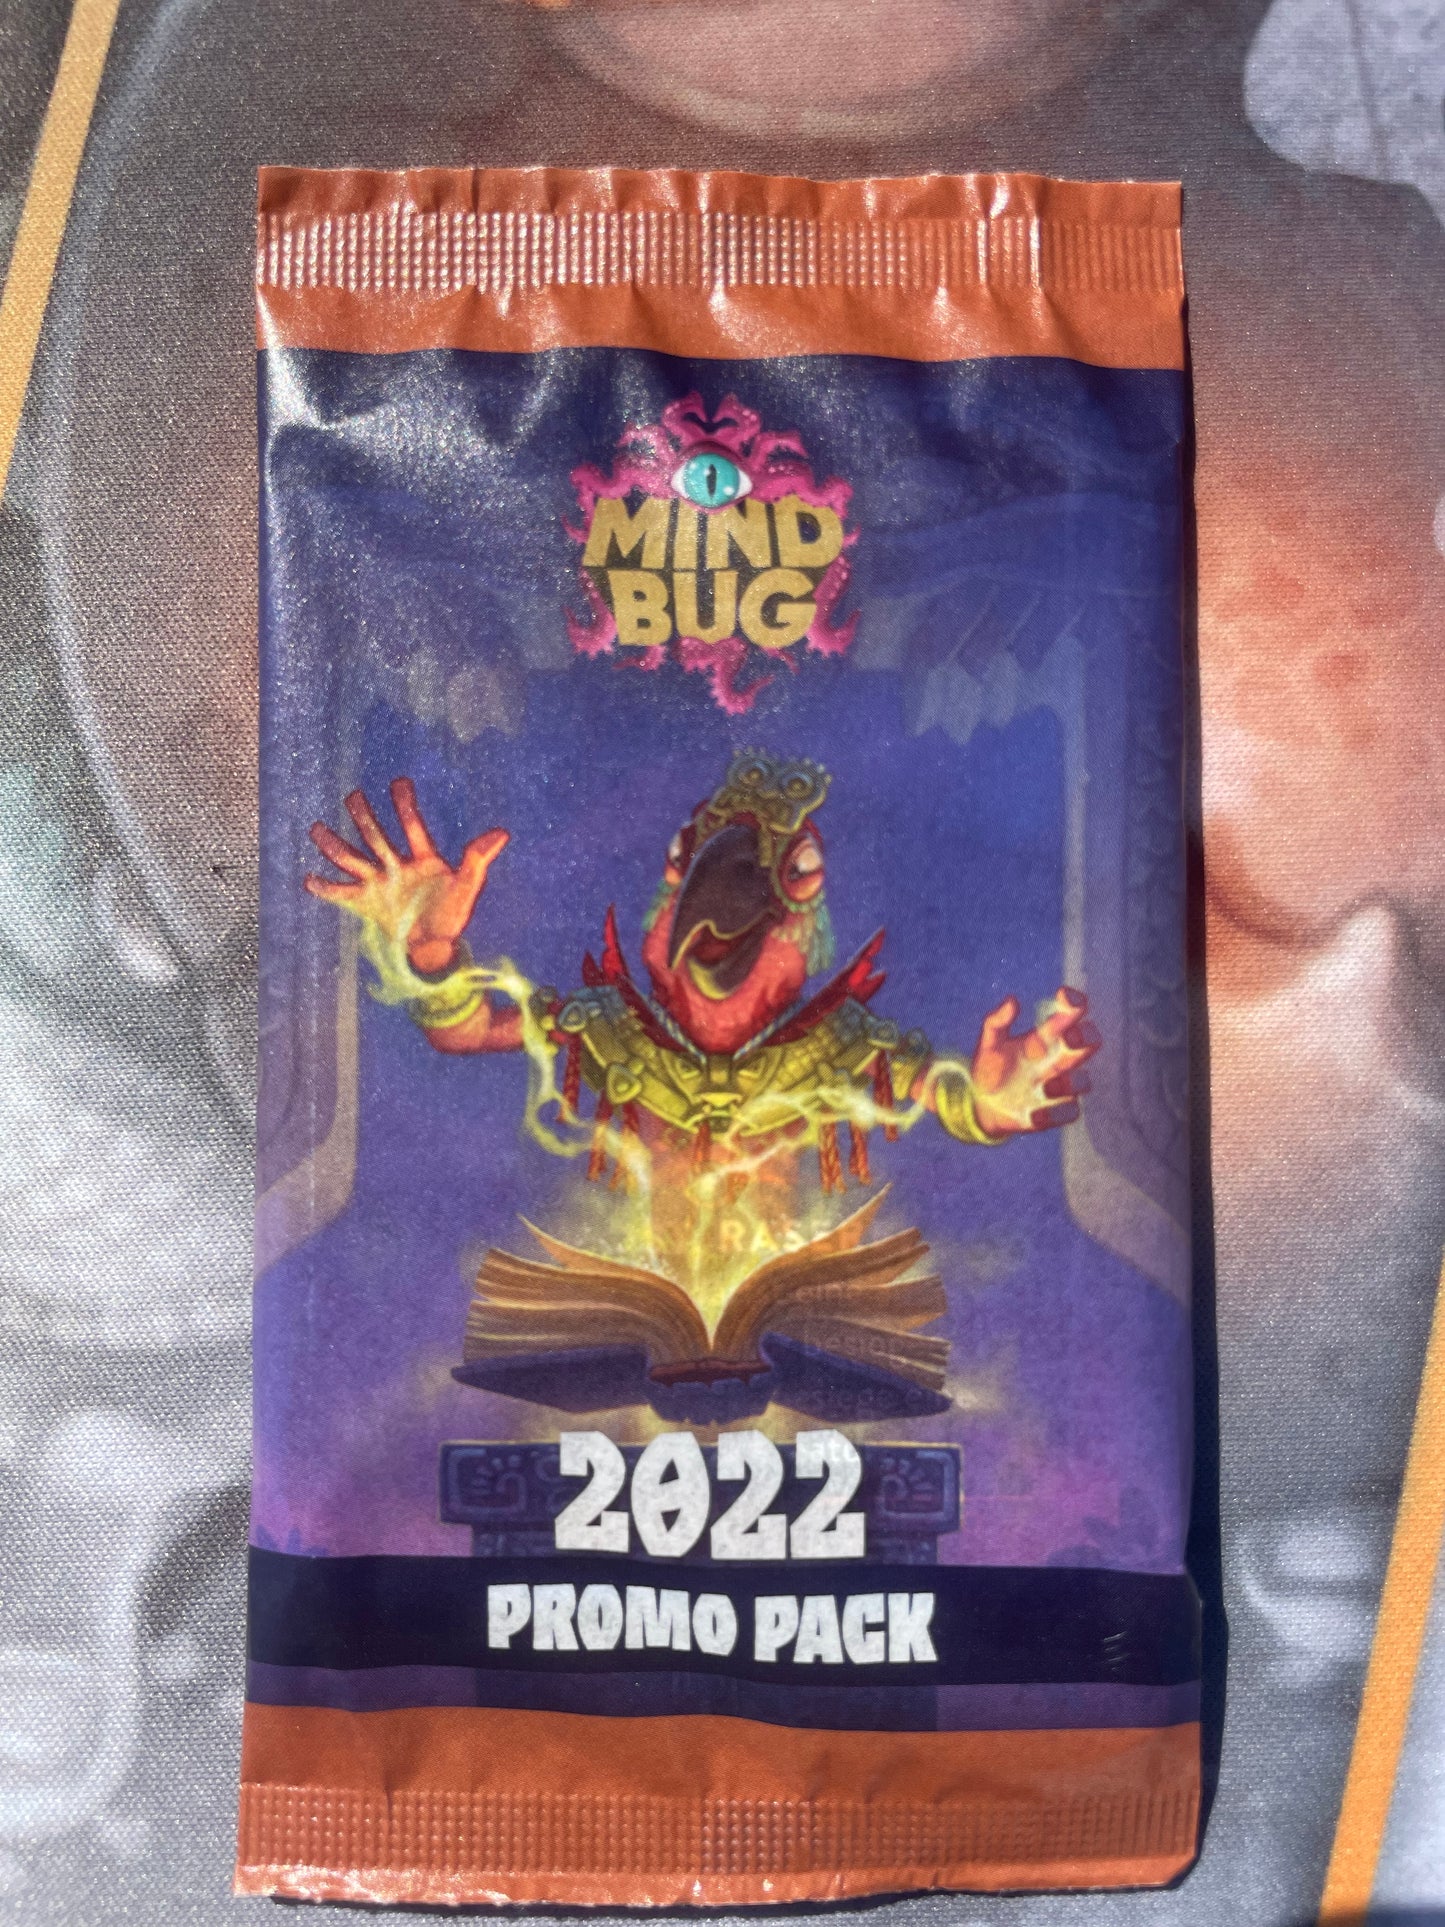 Mindbug - Promo Pack 2022